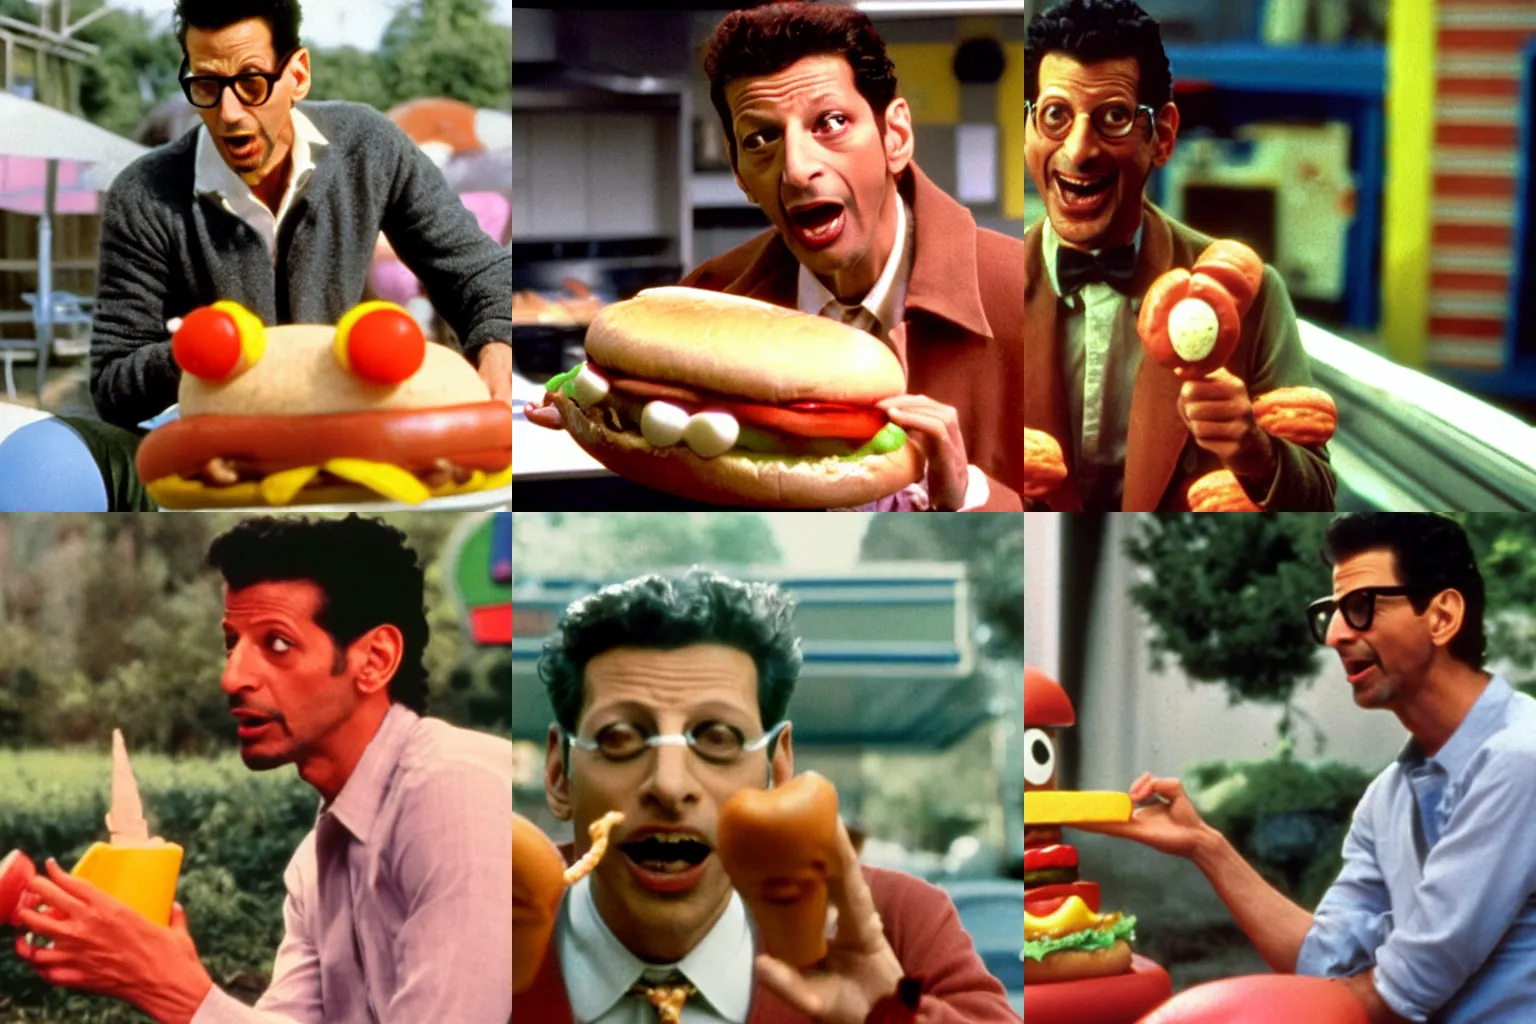 Prompt: Color movie still of Jeff Goldblum in 'Hot Dog monster vs Hamburger monster' by Steven Spielberg